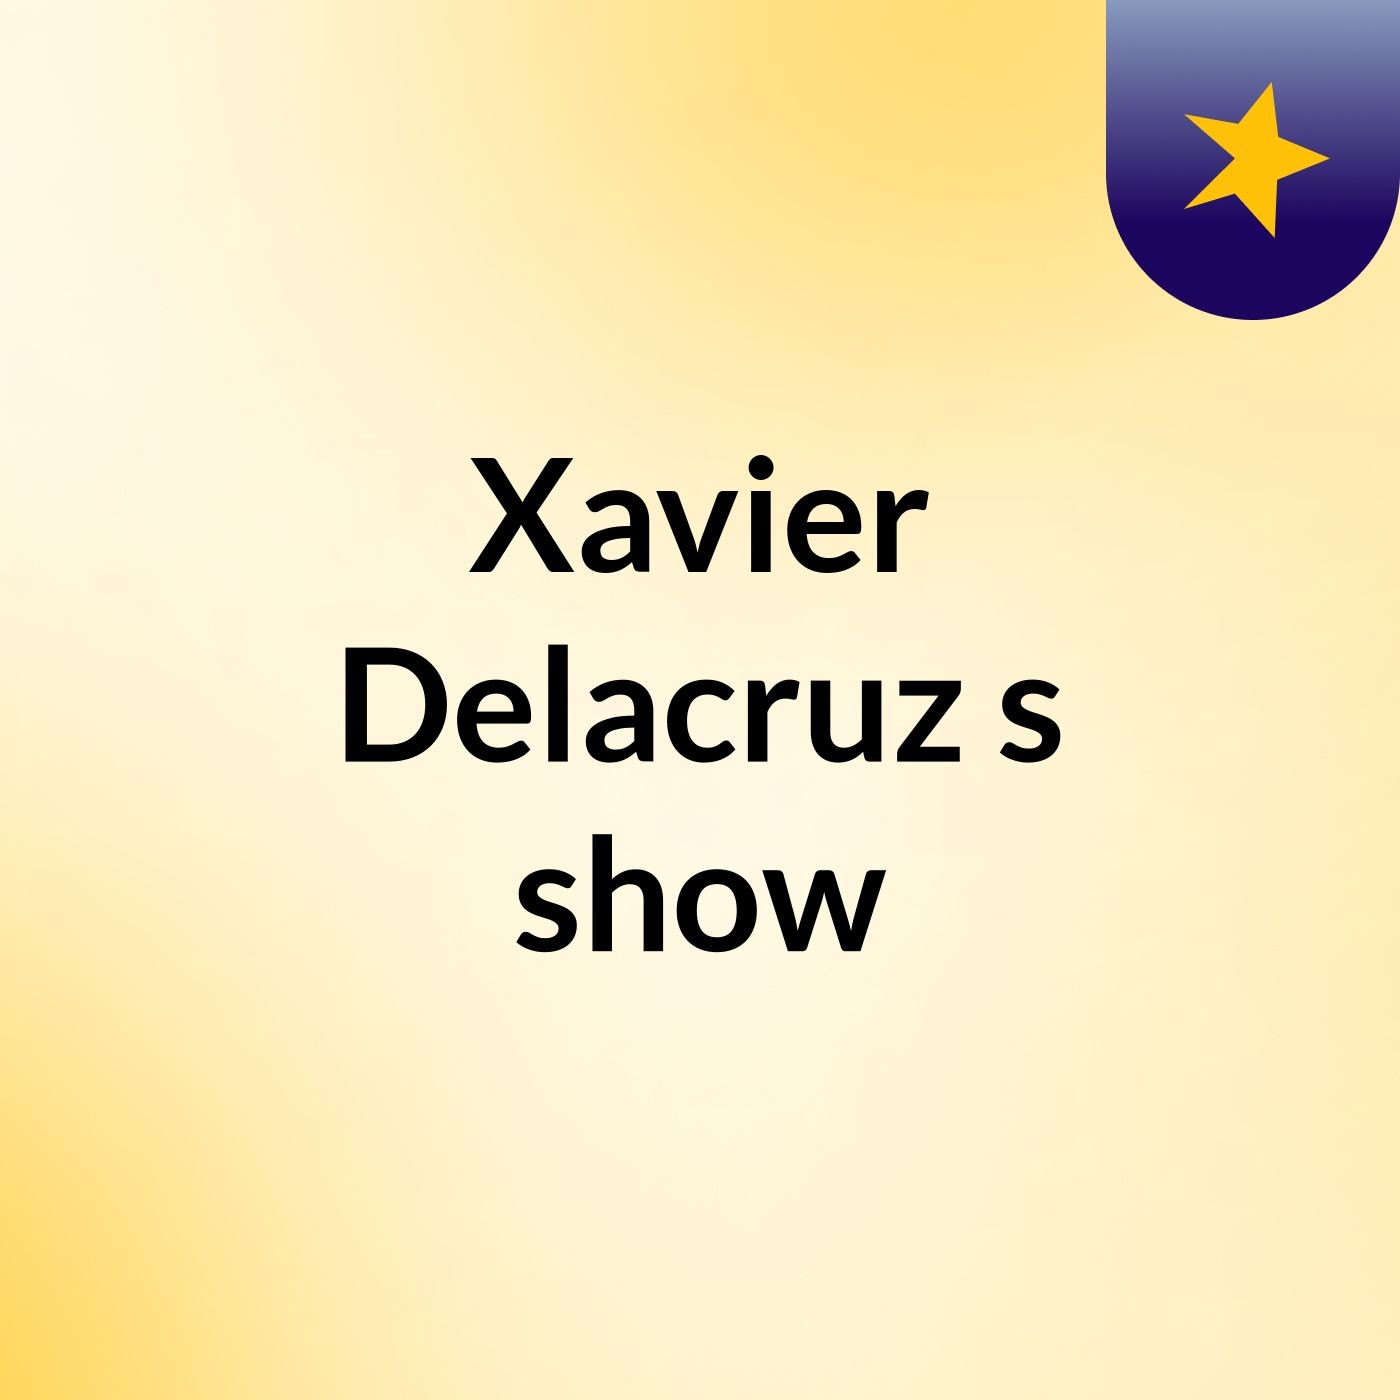 Episode 2- Xavier Delacruz's show